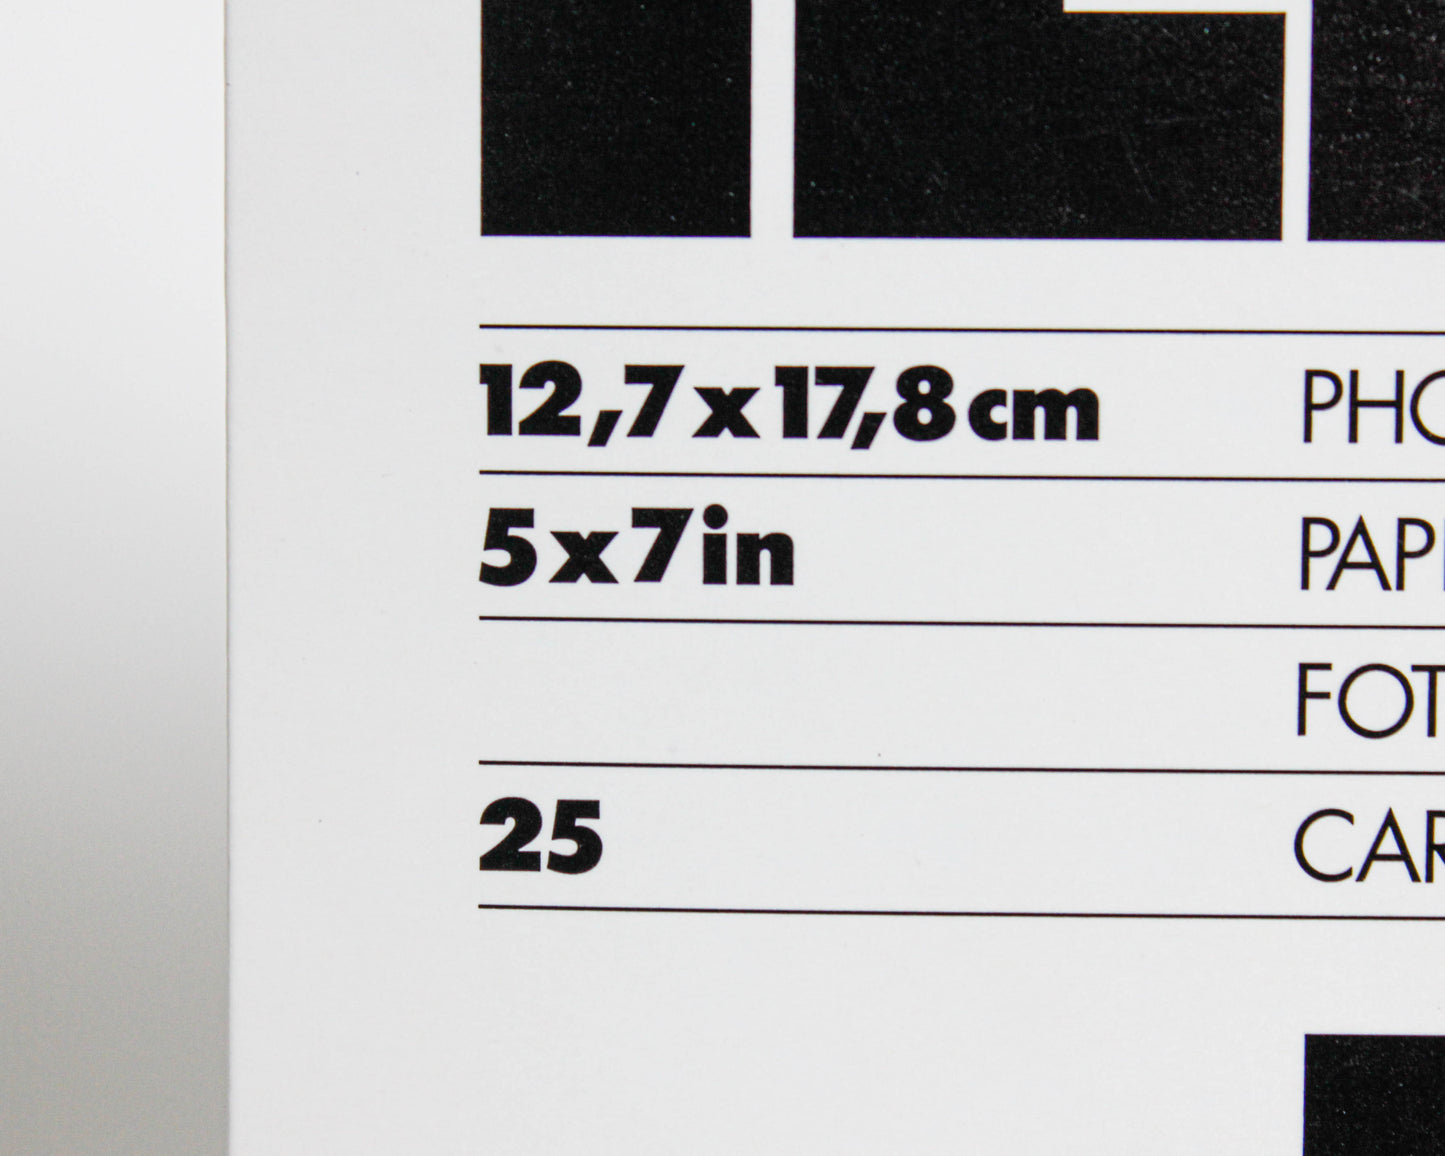 Papel fotográfco ILFORD MGRC de Luxe Perla 5" x 7' 25H